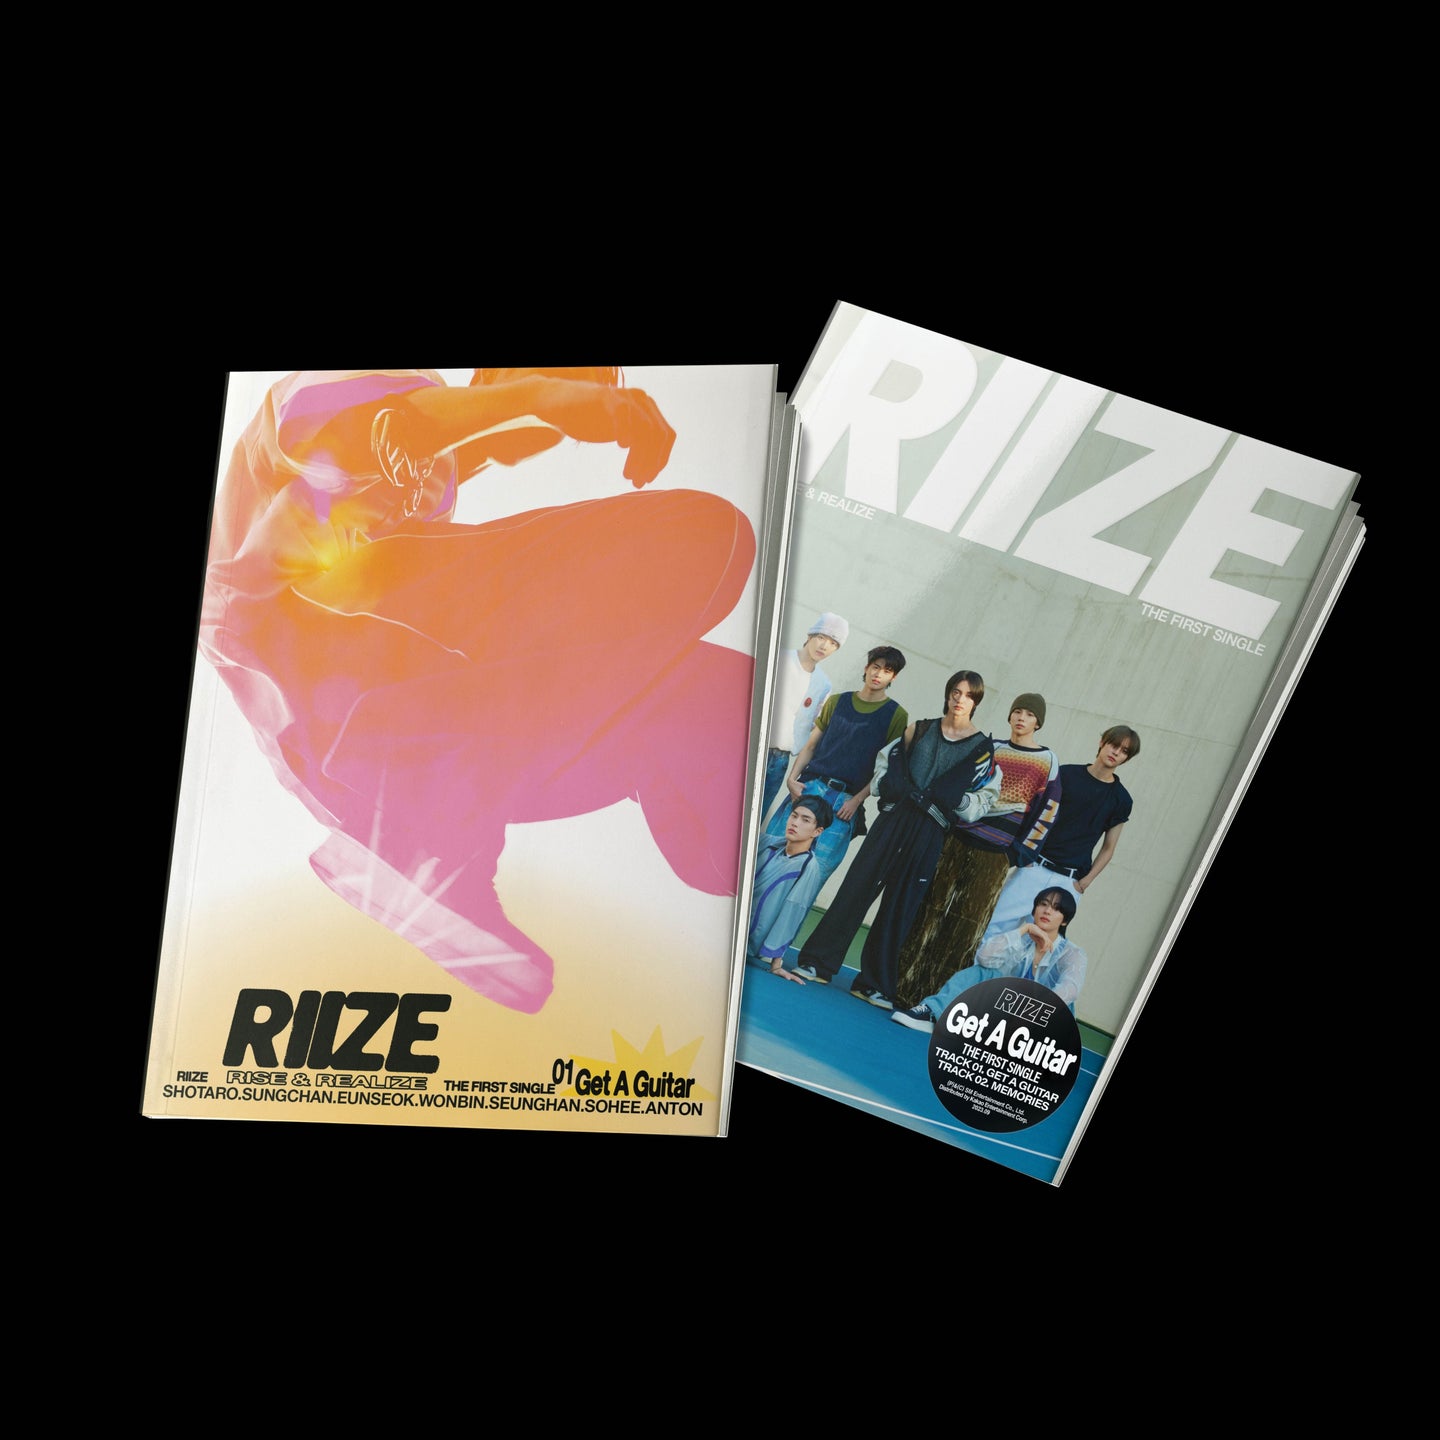 RIIZE Single Album Vol. 1 - Get A Guitar (Random)